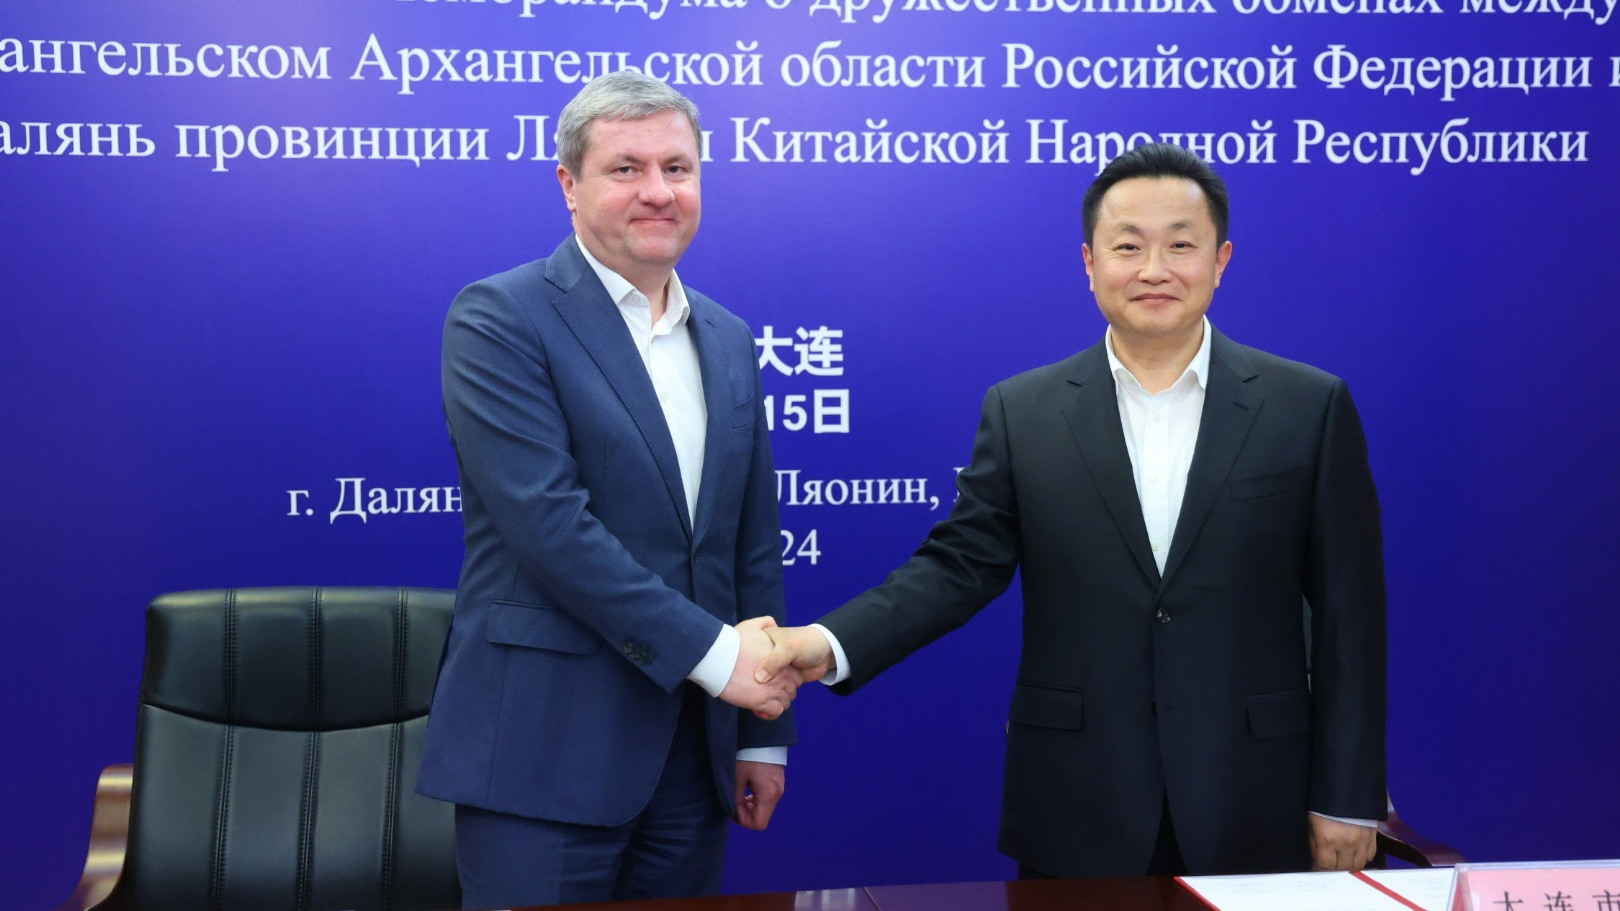 Архангельск будет сотрудничать с китайским Далянем: чем могут помочь города друг-другу